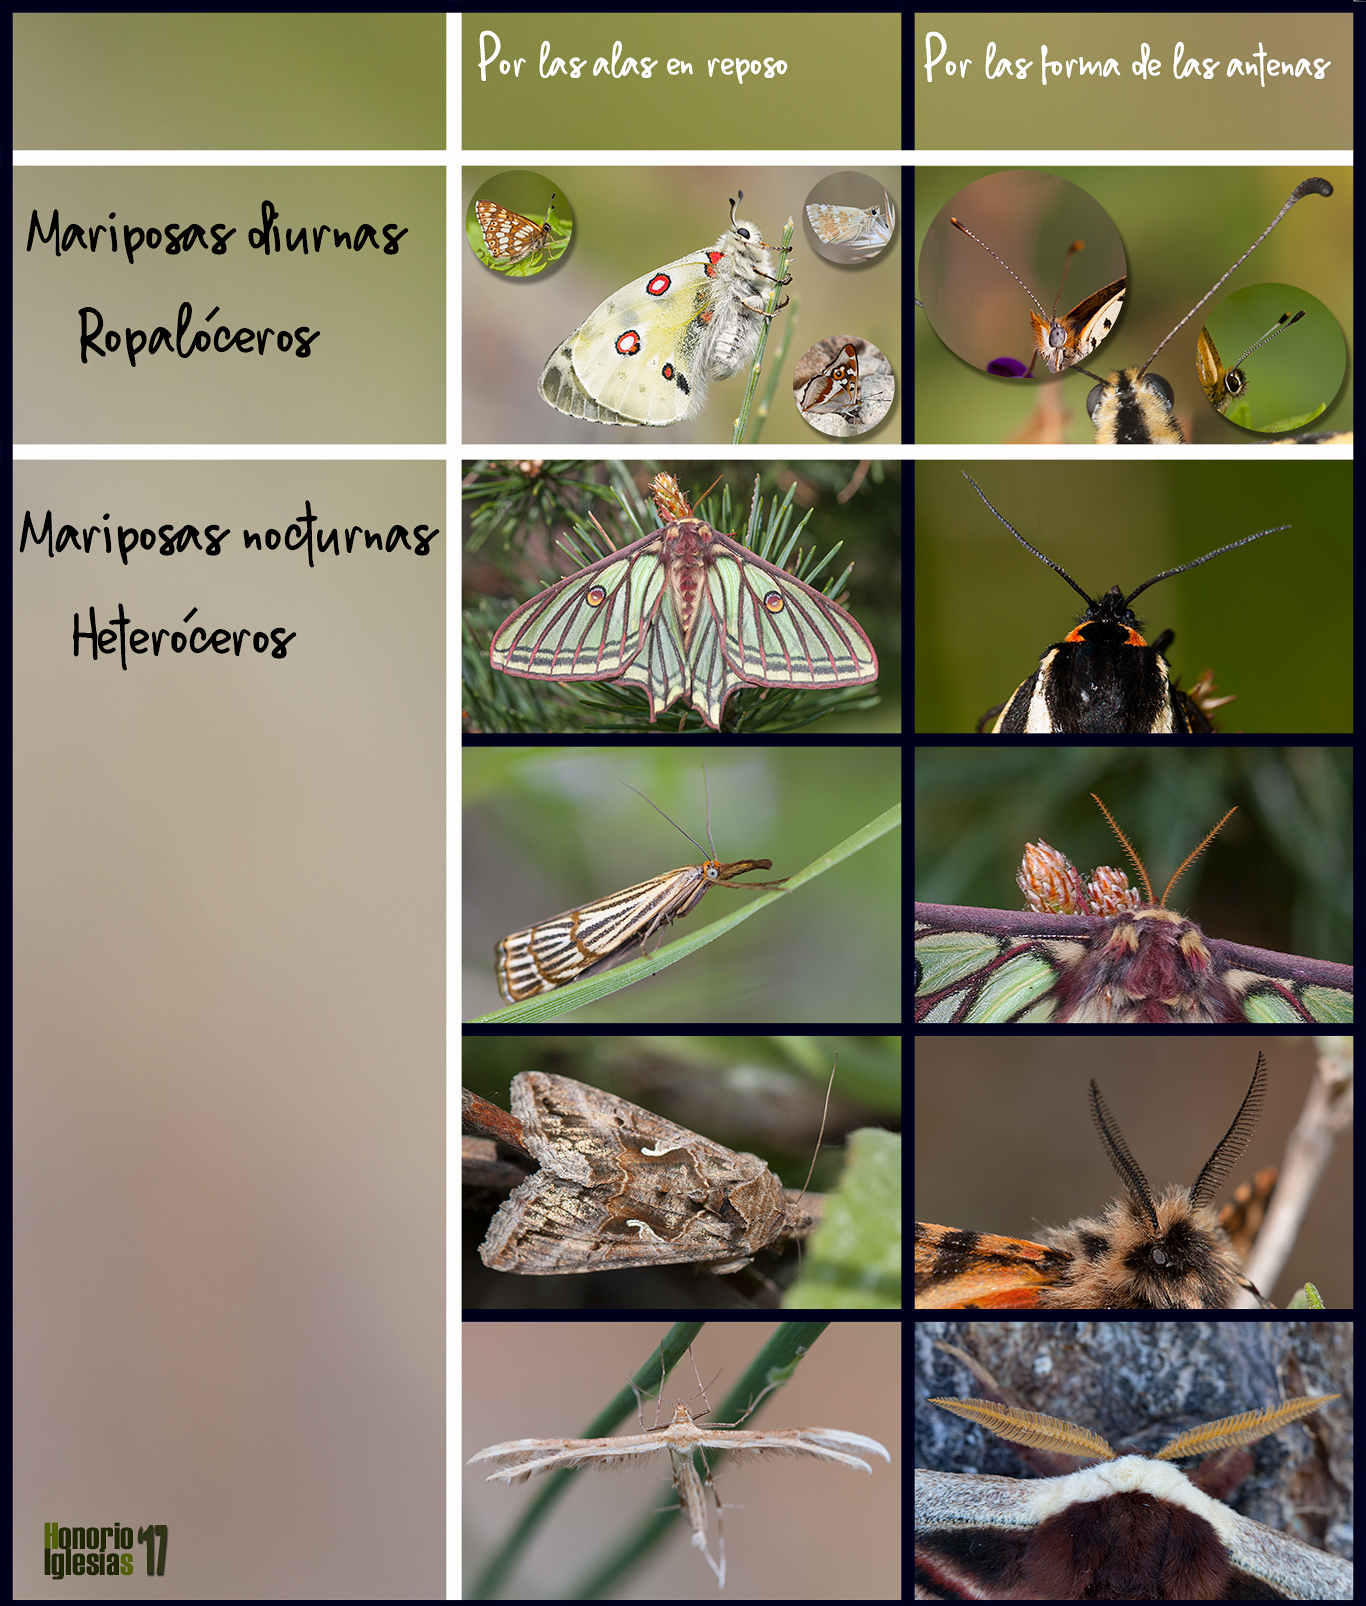 Montaje con los componentes de la familia Papilionidae presentes en Valsaín